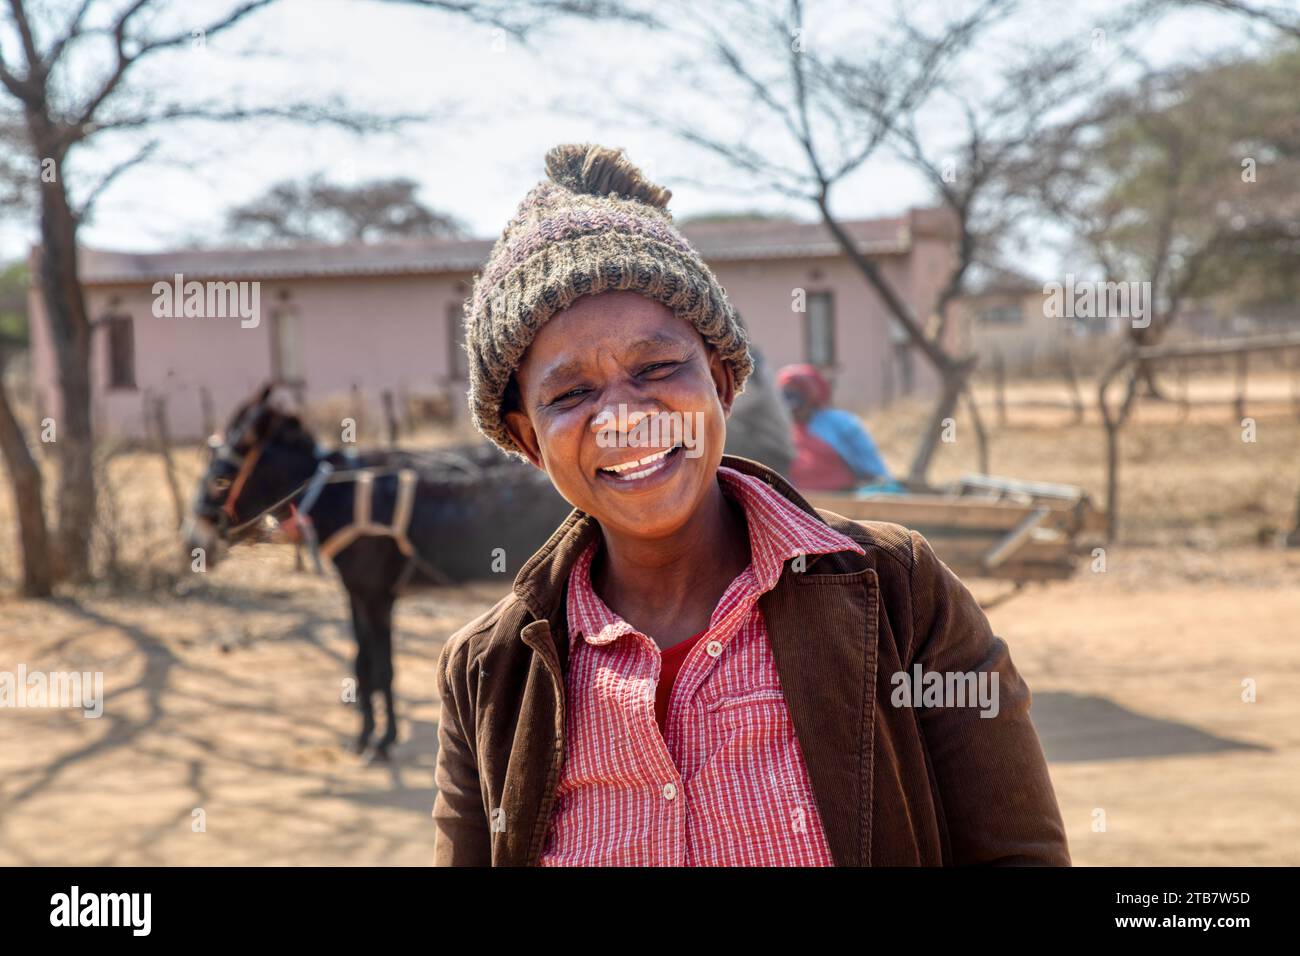 heureuse femme de village africain, riant dans la rue, chemin de terre avec un chariot d'âne en arrière-plan Banque D'Images